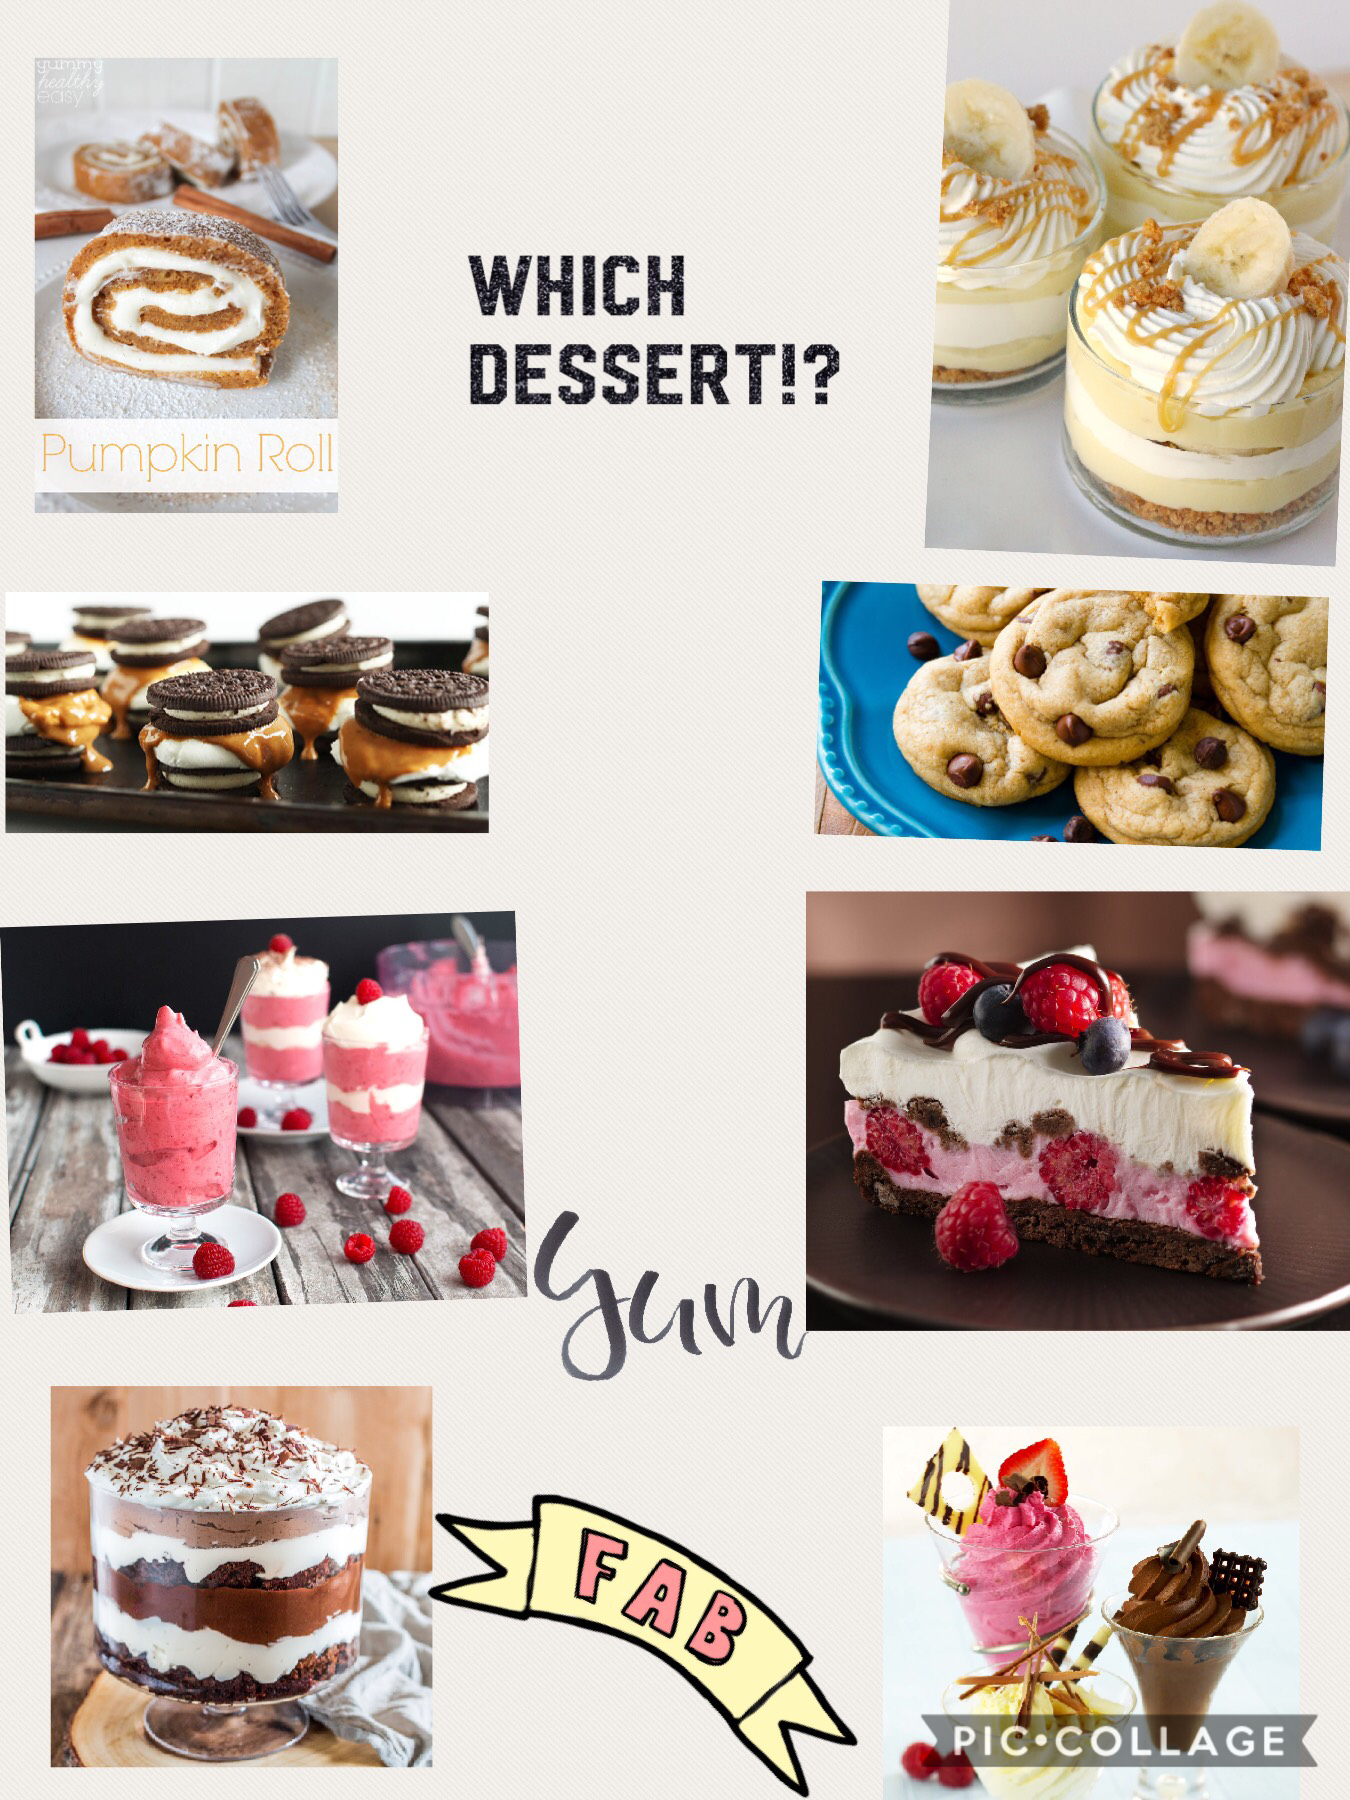 Which FIRE dessert wld u pick?!